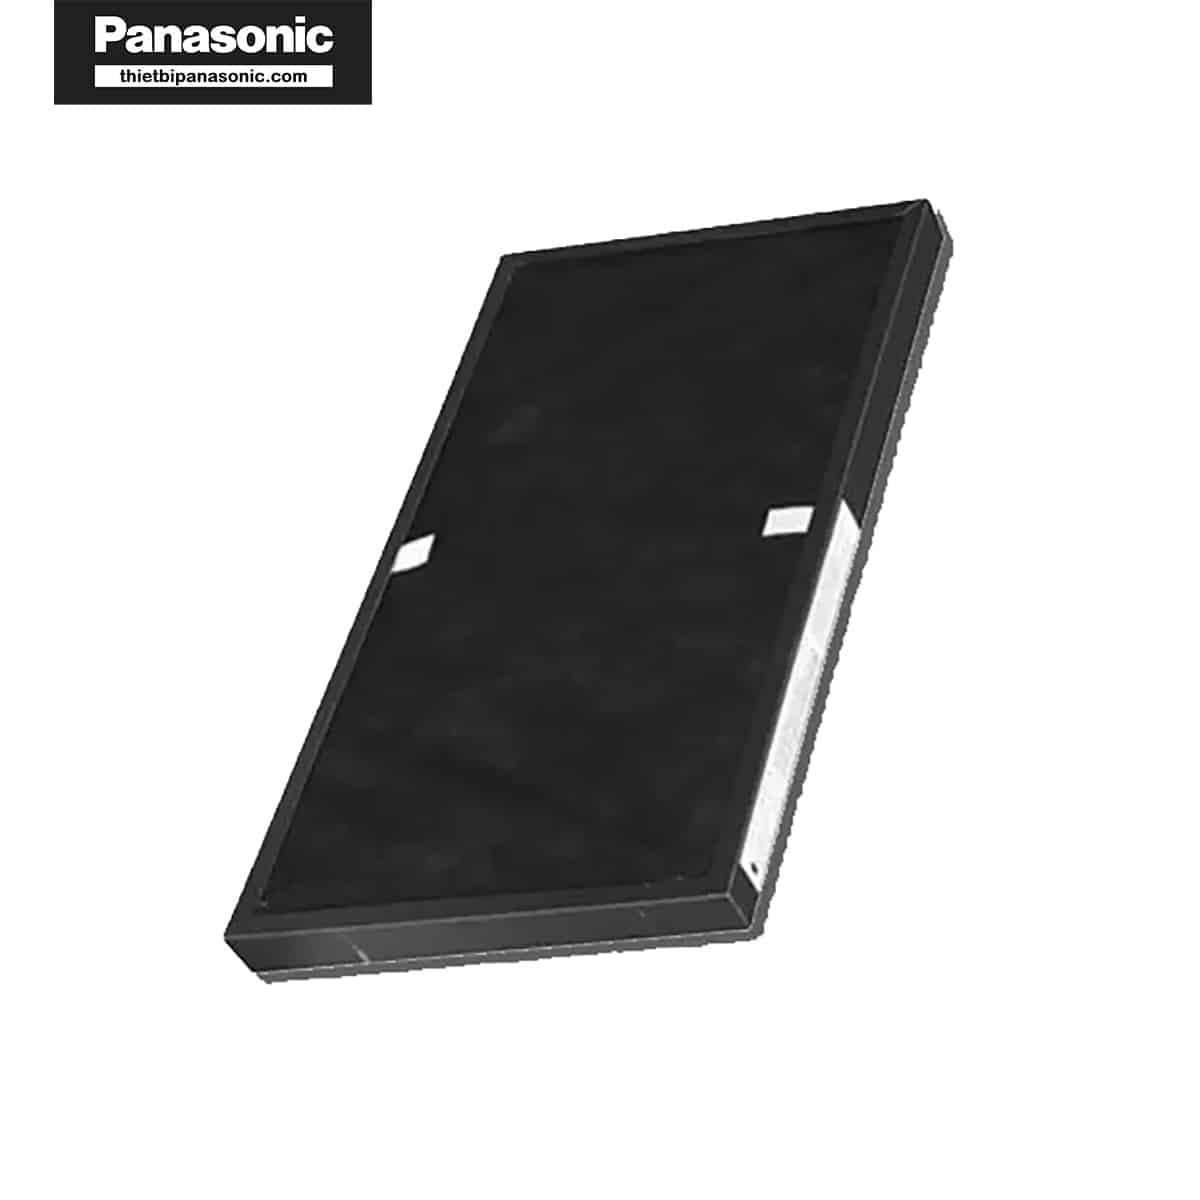 Mua Màng lọc hỗn hợp Panasonic F-PXM55A giá rẻ tại thietbipanasonic.com